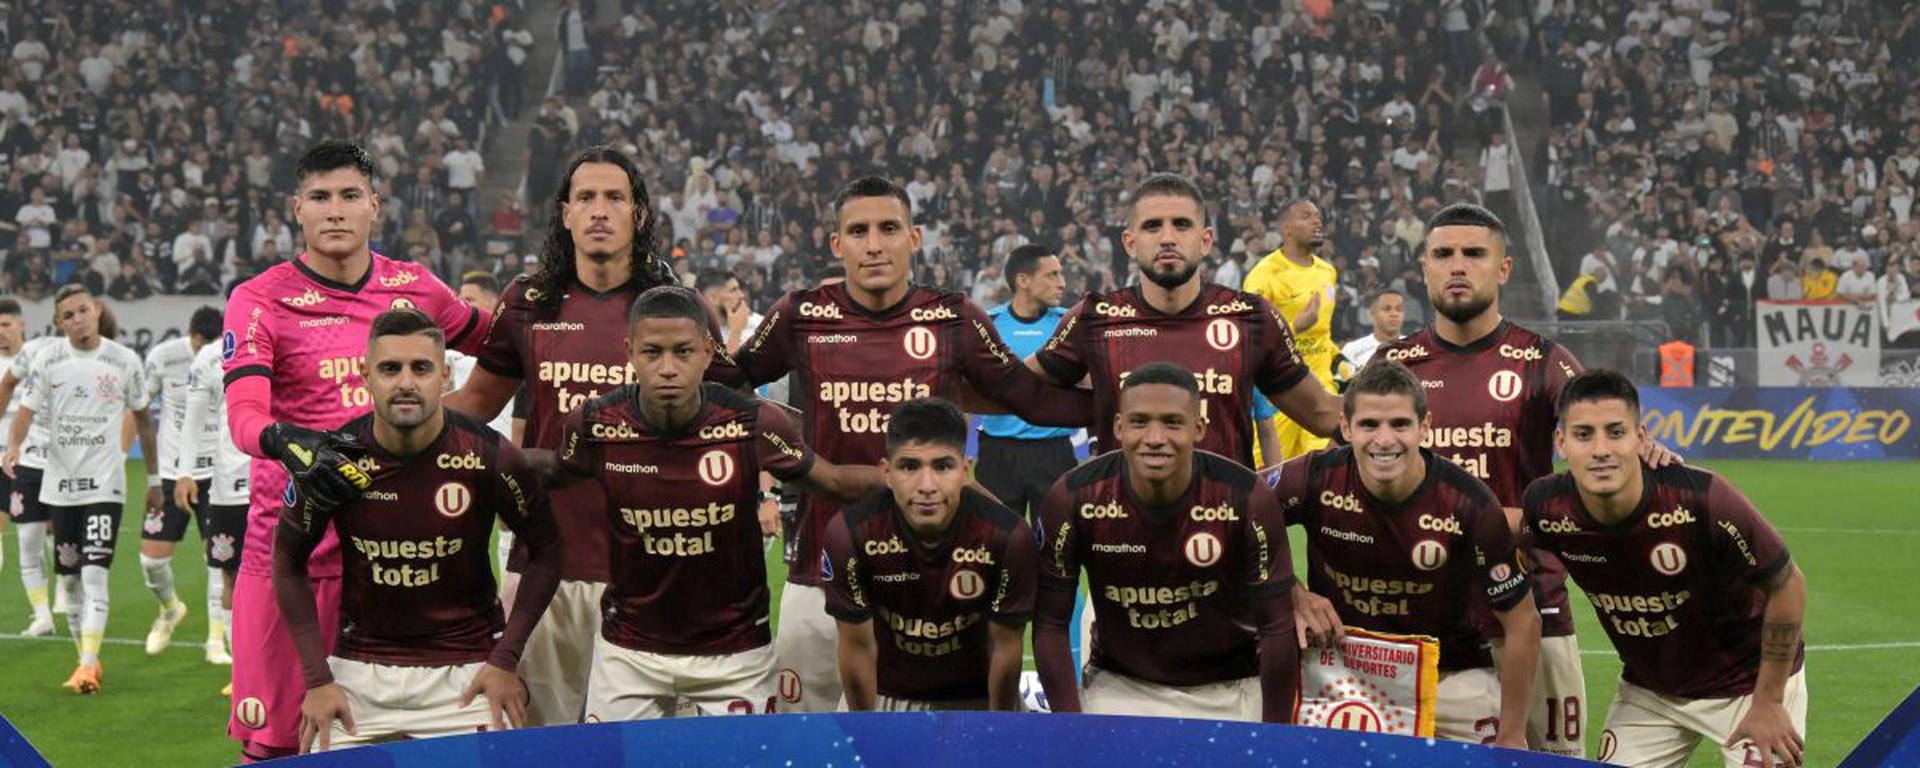 Con Romero y Ureña sobrios y seguros, el sueño sigue intacto: así vimos el unoxuno de la ‘U’ ante Corinthians por Copa Sudamericana